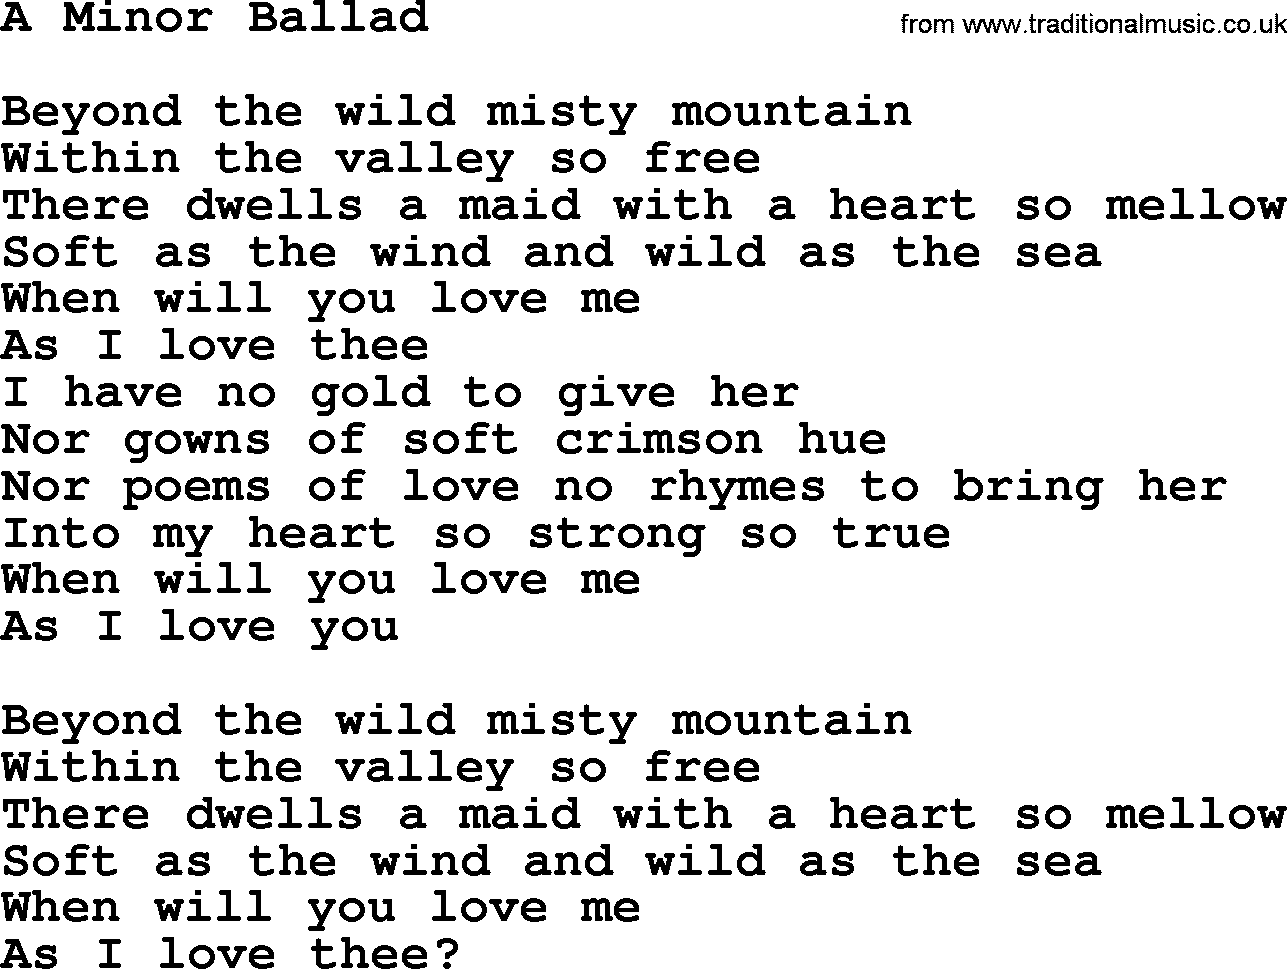 Gordon Lightfoot song A Minor Ballad, lyrics